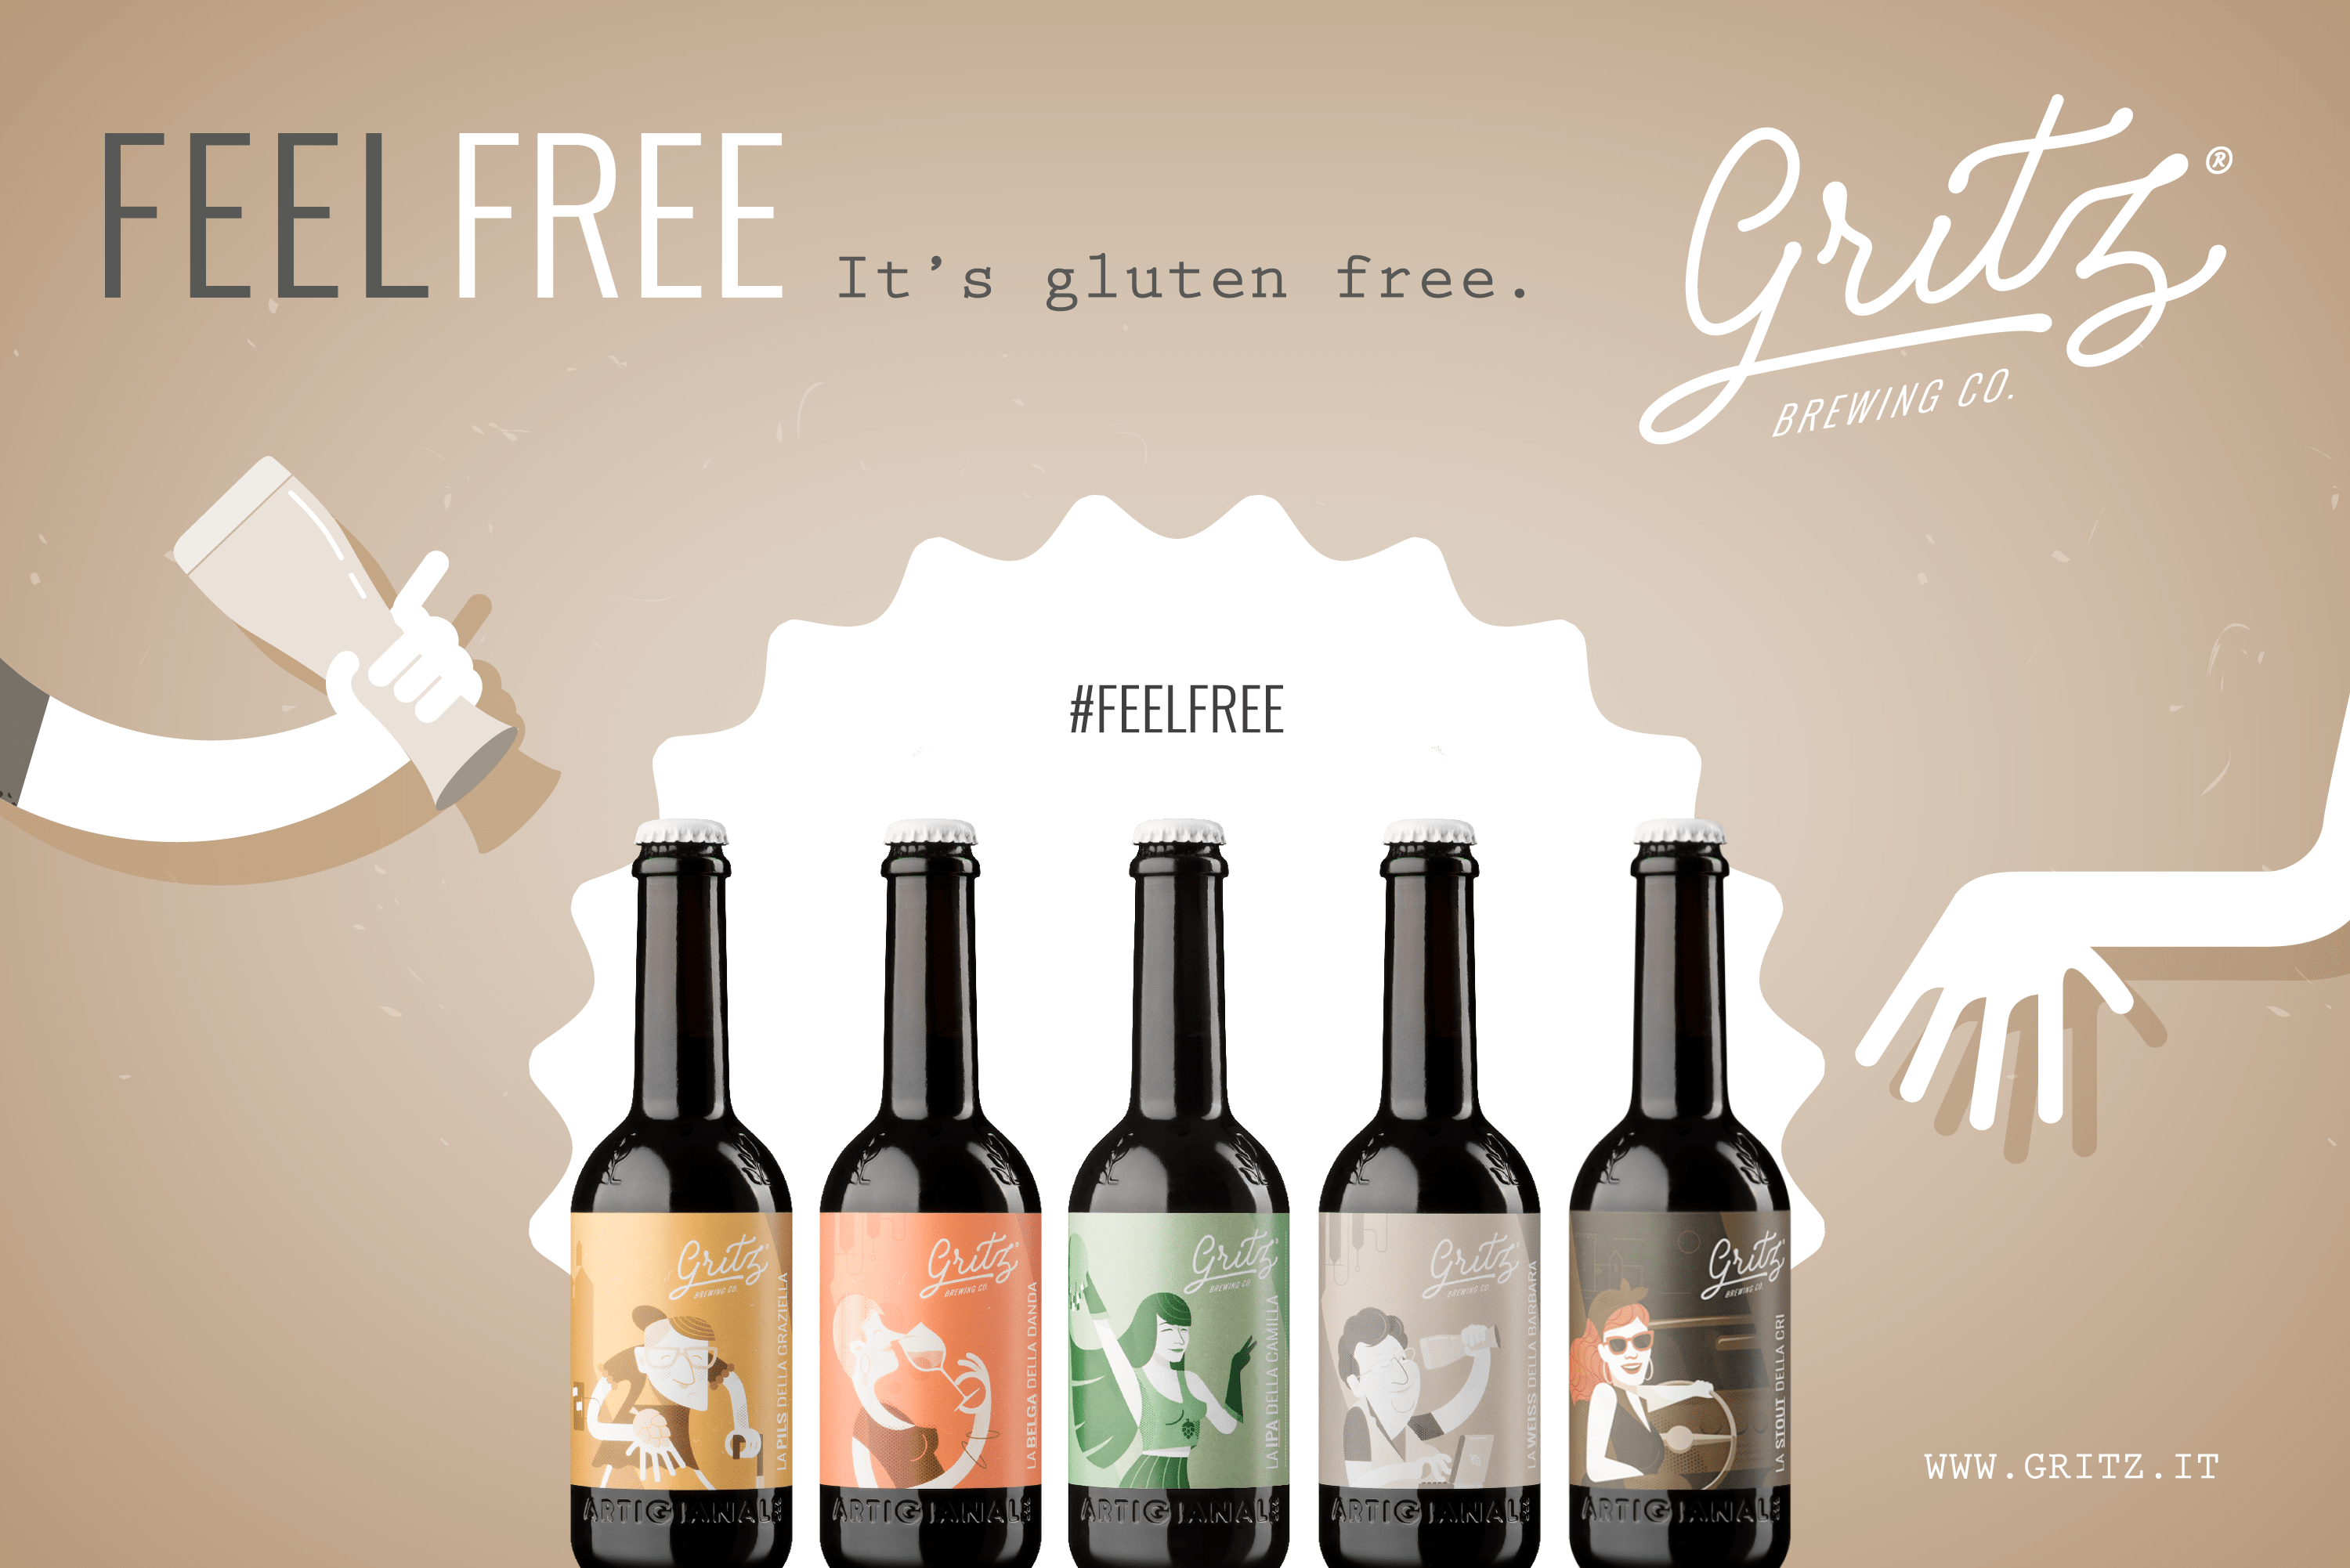 Gritz lancia la campagna Feel Free: birre senza glutine, artigianali e italiane!